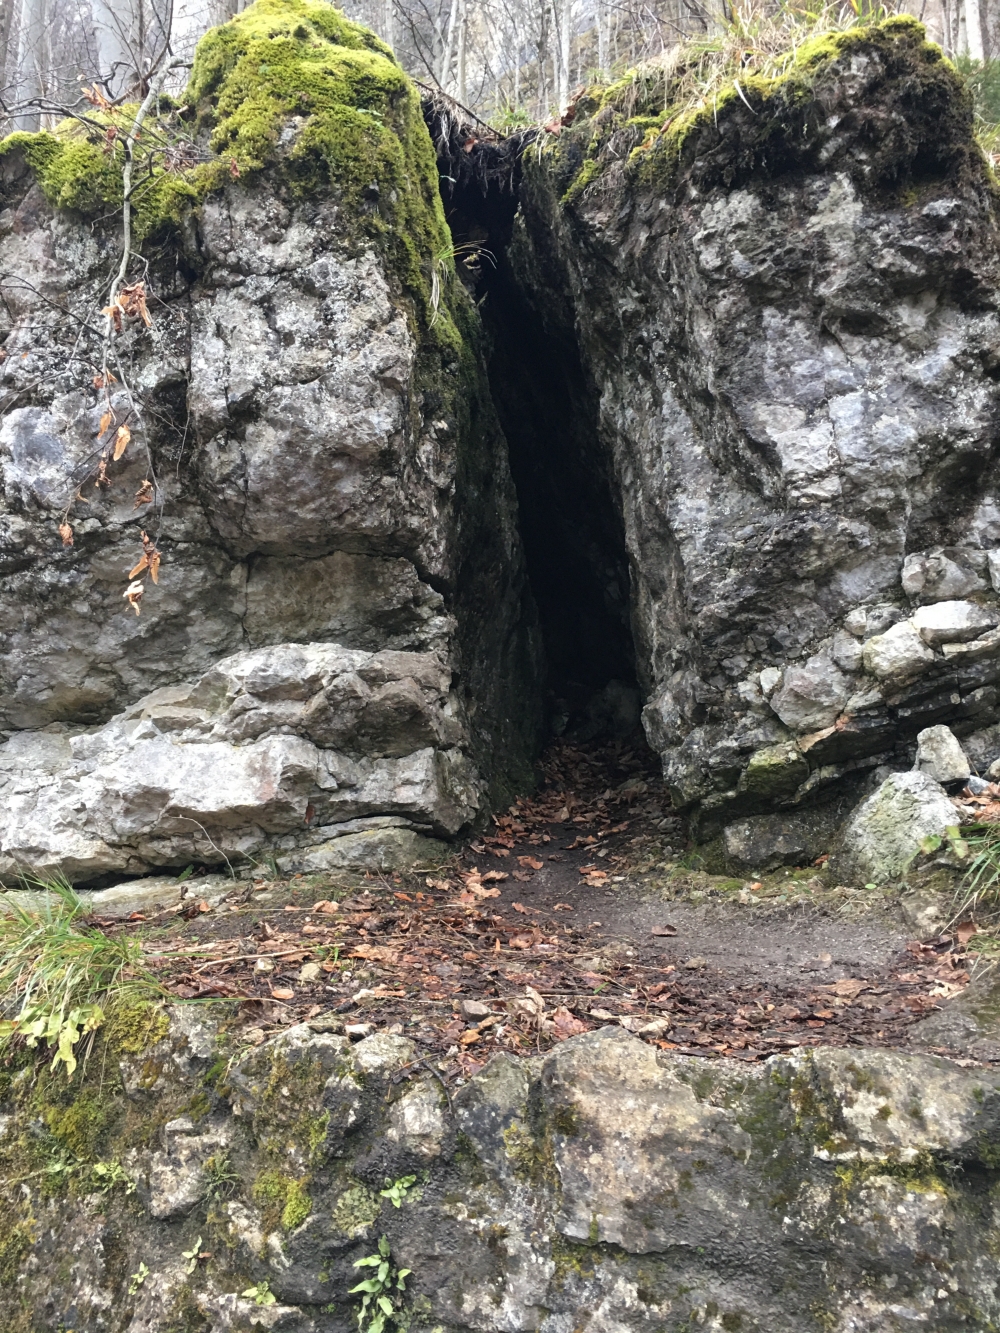 Wanderparkplatz Hohe Asten -> Teufelsloch: Ein kurzer Spalt in einem Felsblock